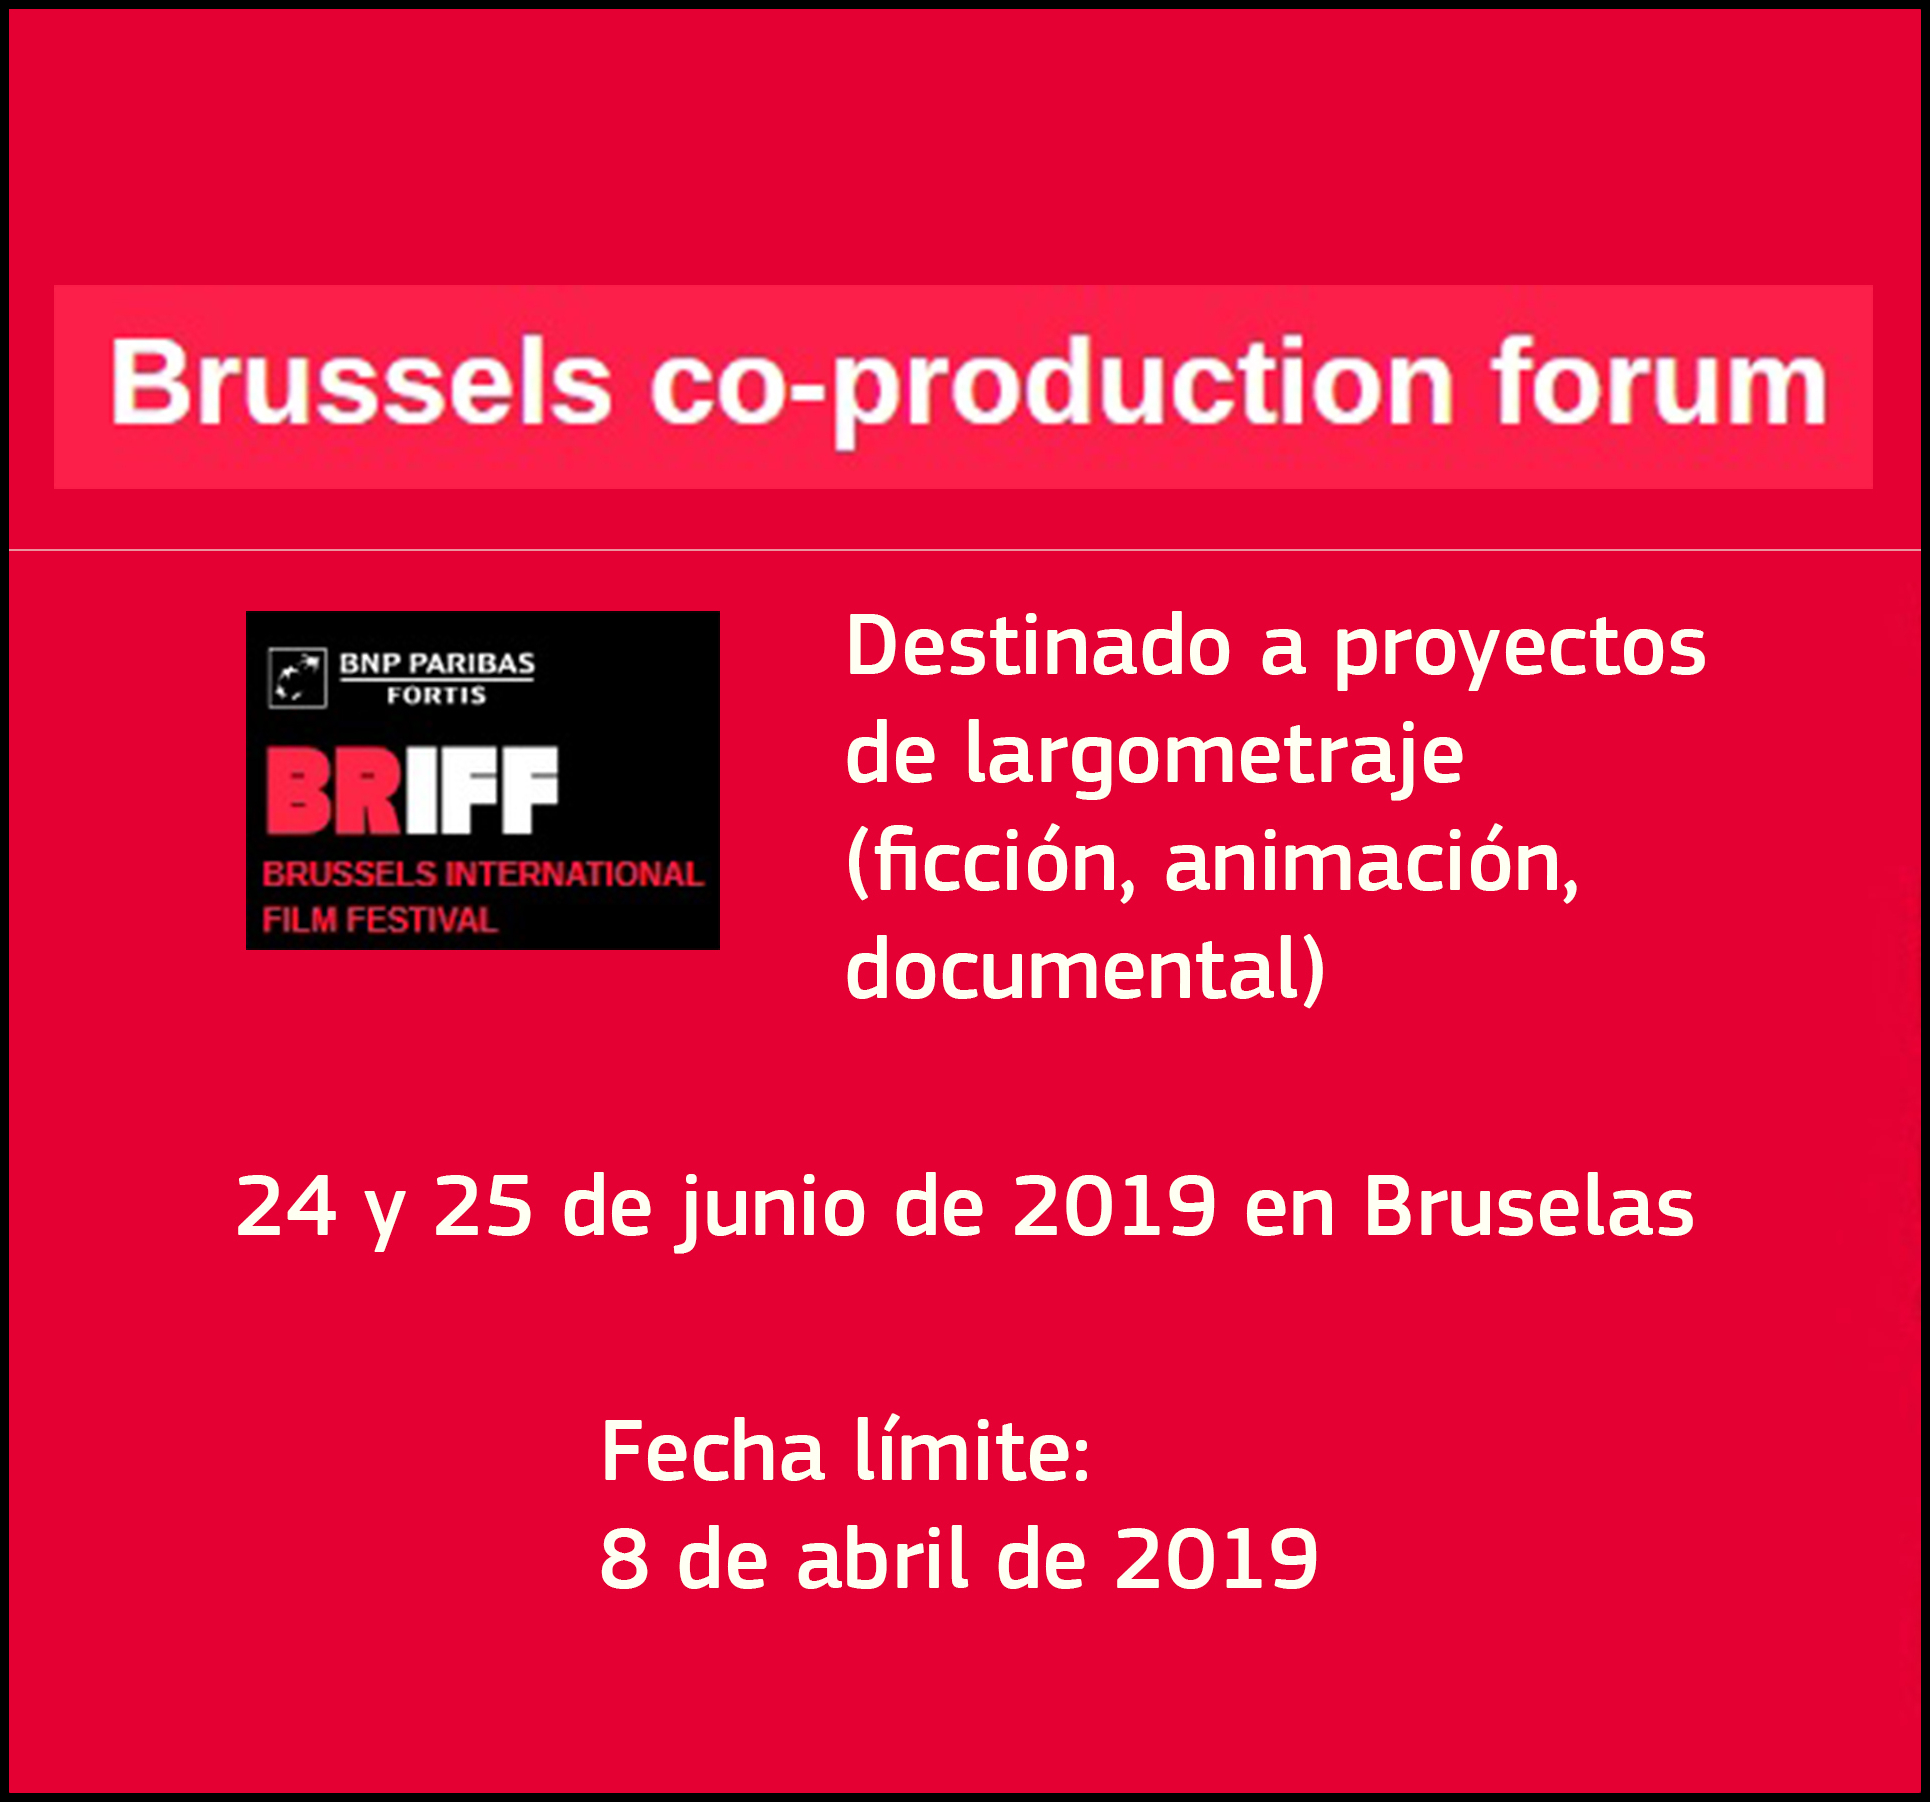 BrusselsCoproductionForum2019Interior